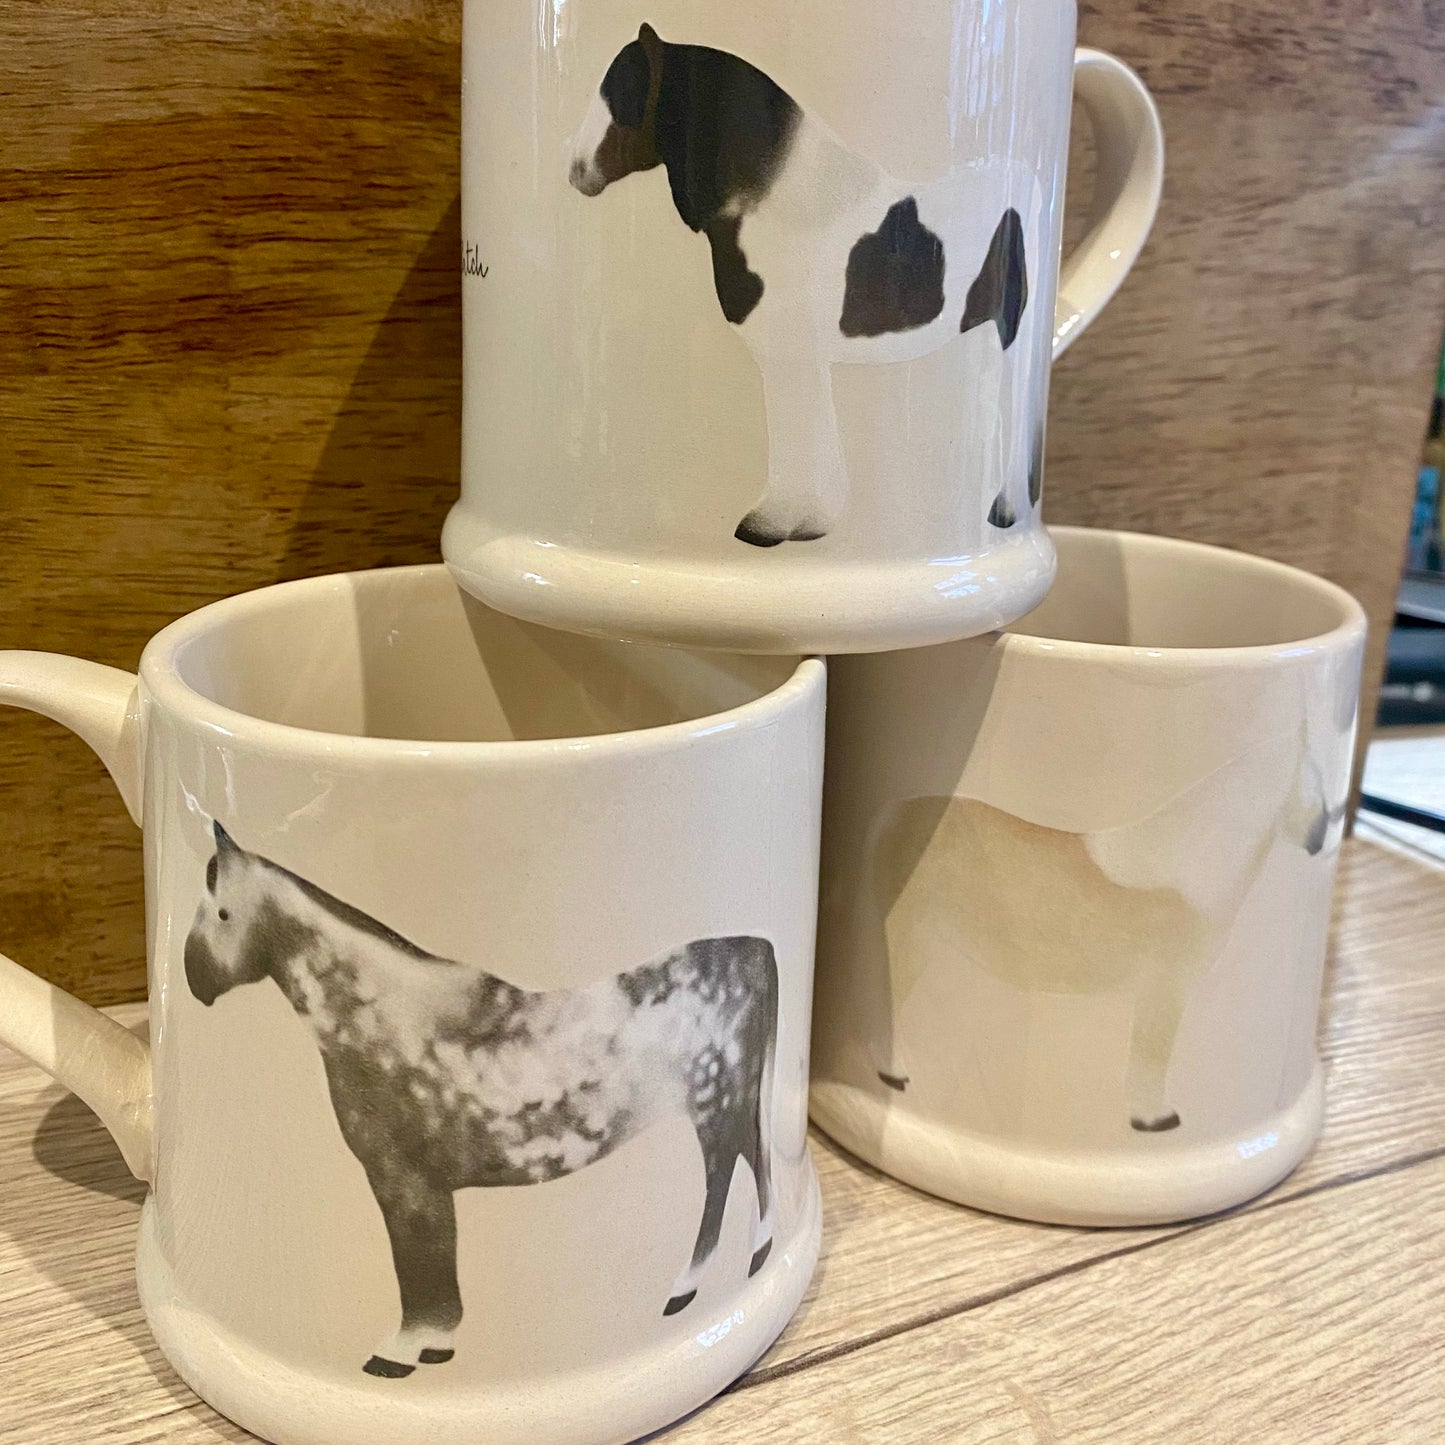 Personalised Horse mug